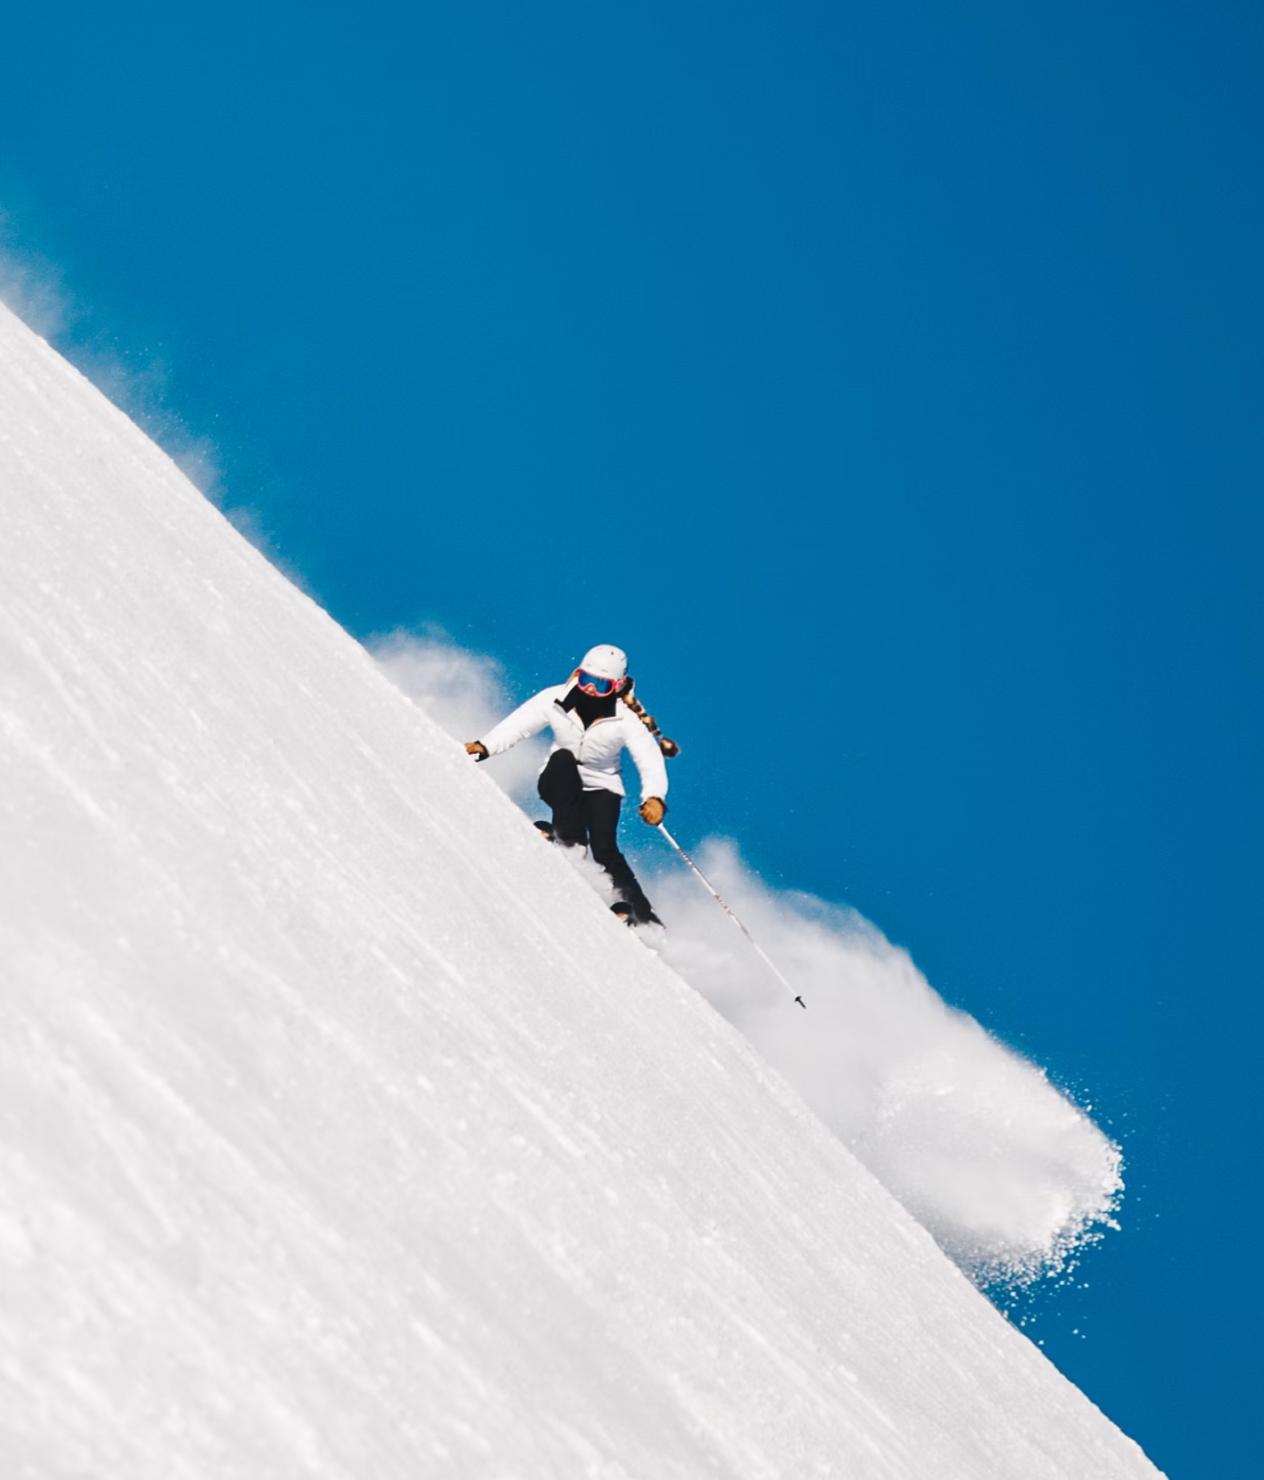 Image d'une personne qui descend une piste de ski